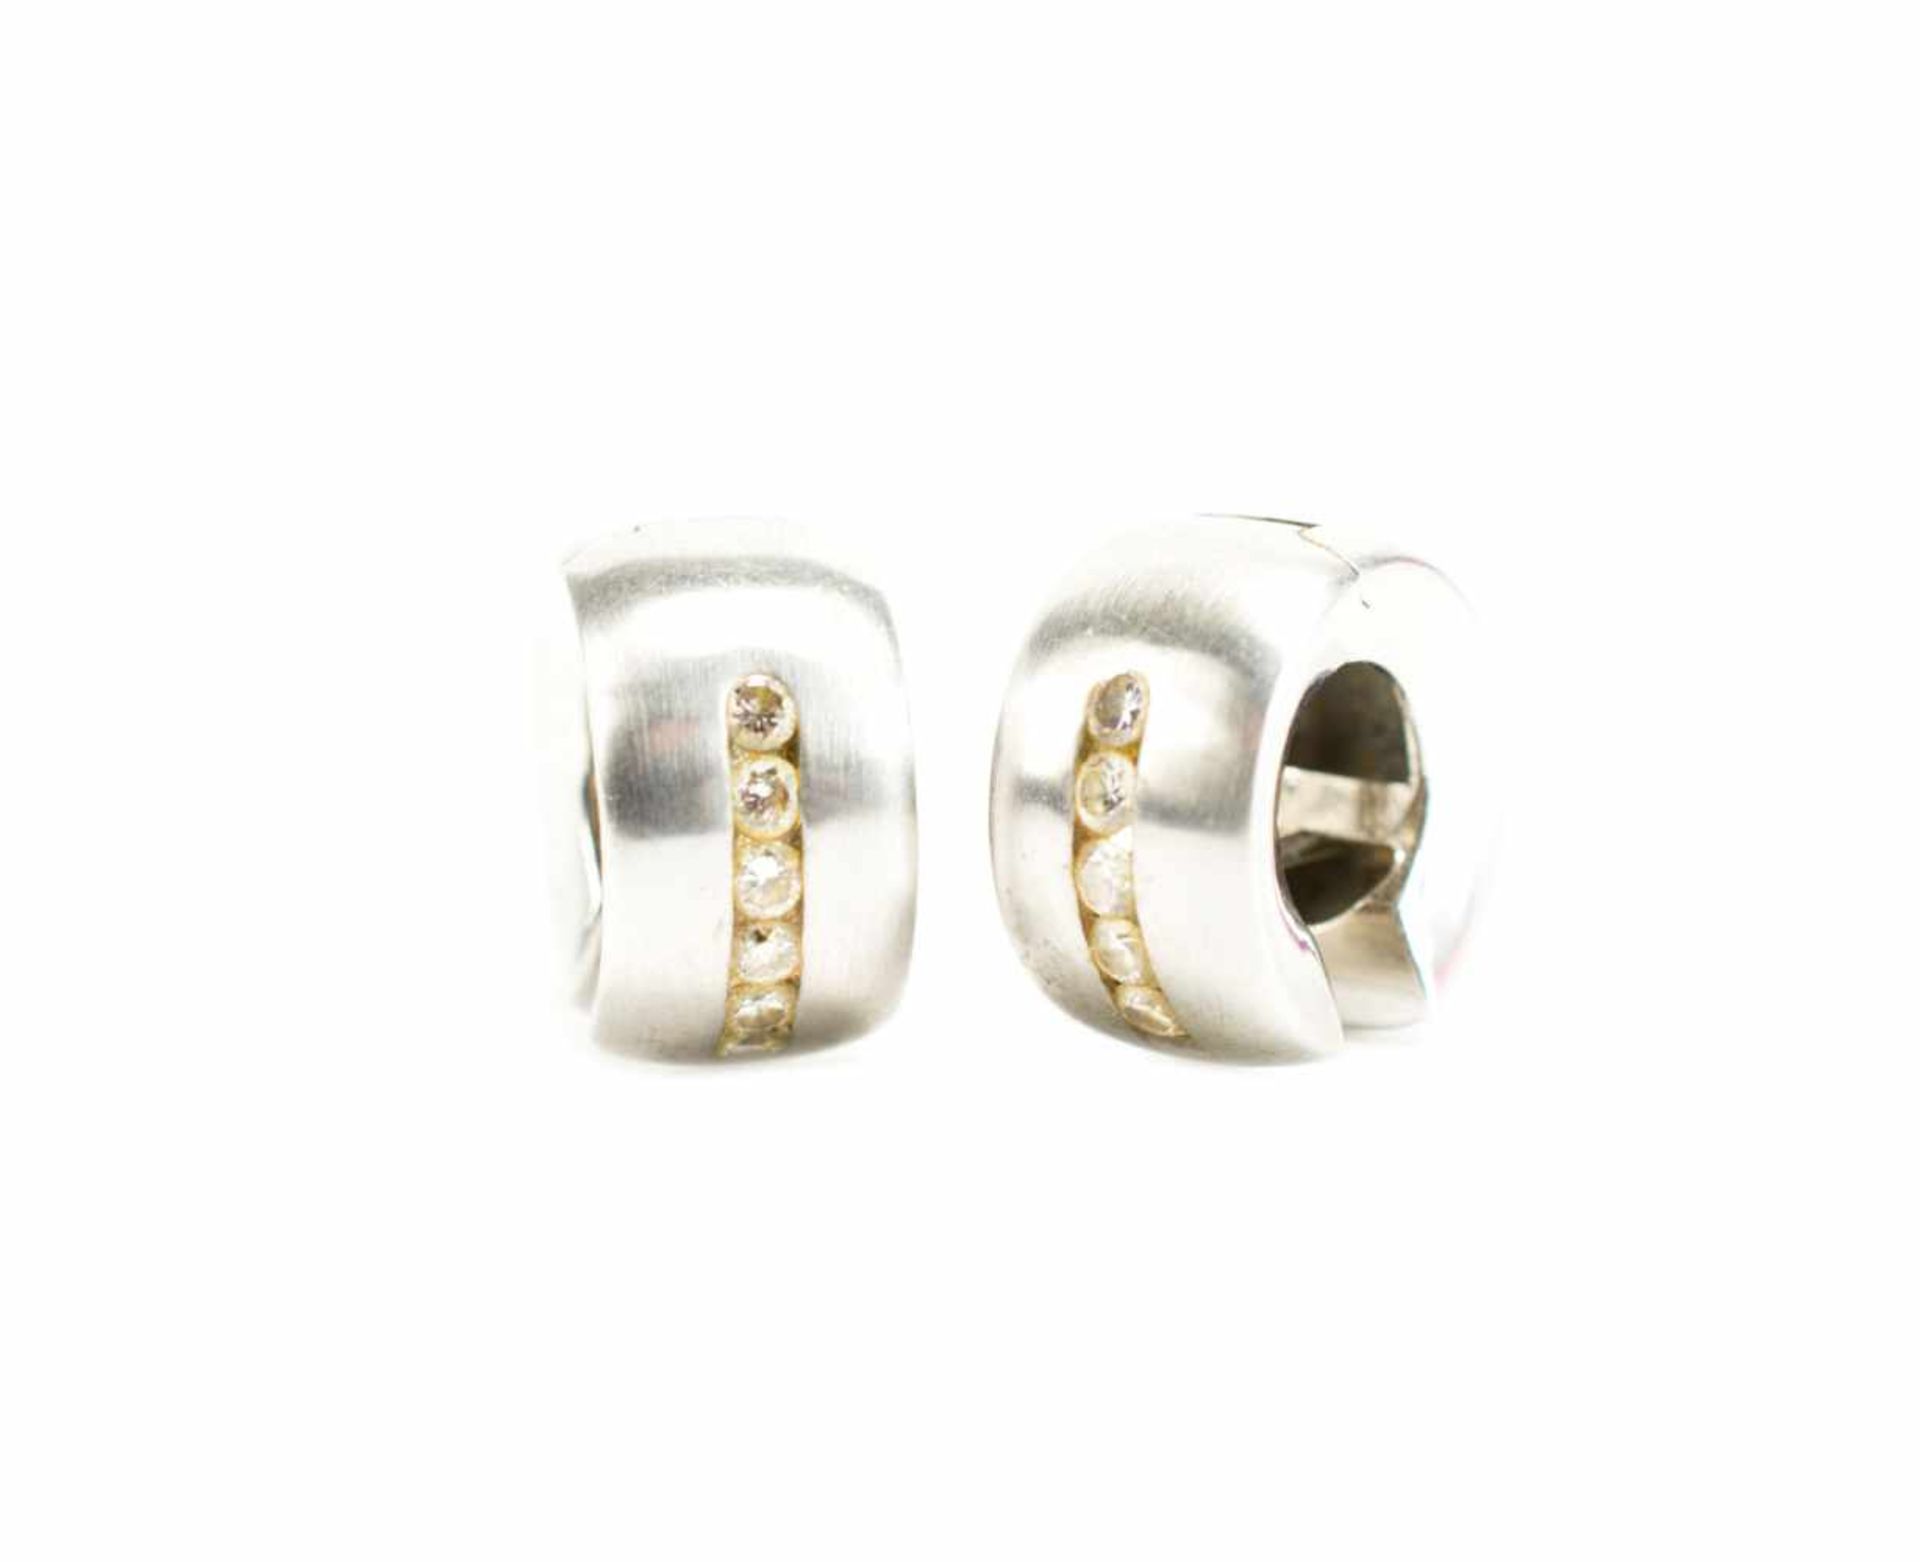 Paar Ohrringe750 Weißgold, besetzt mit je 6 Brillanten, gesamt ca. 0,36 ct, vs, I/J, Ø 15 mm,